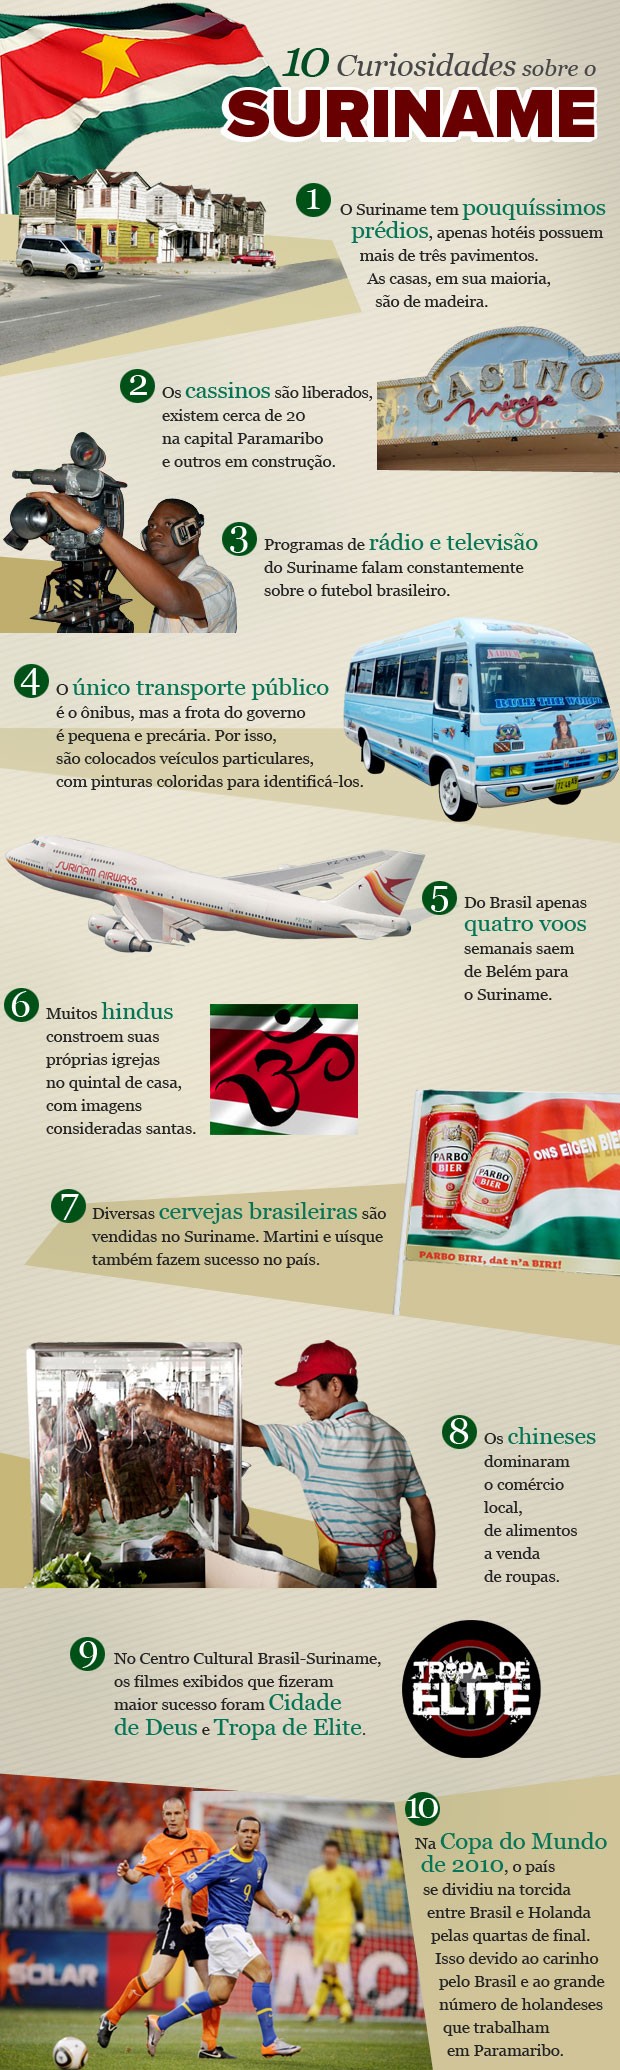 Info 10 Curiosidades Suriname (Foto: infoesporte)